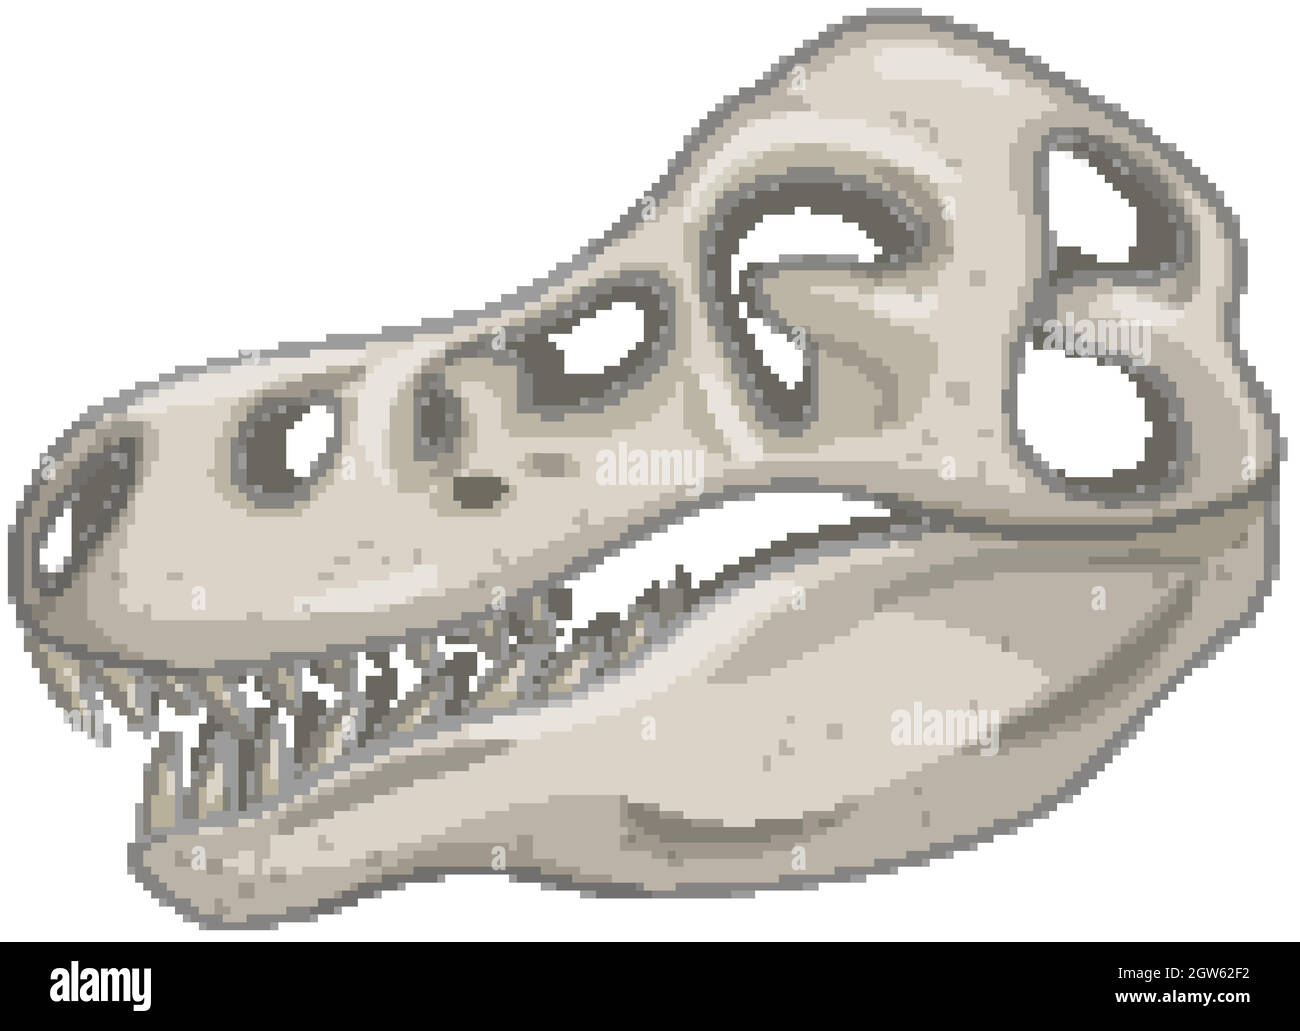 Skull of dinosaur skeletons on white background Stock Vector